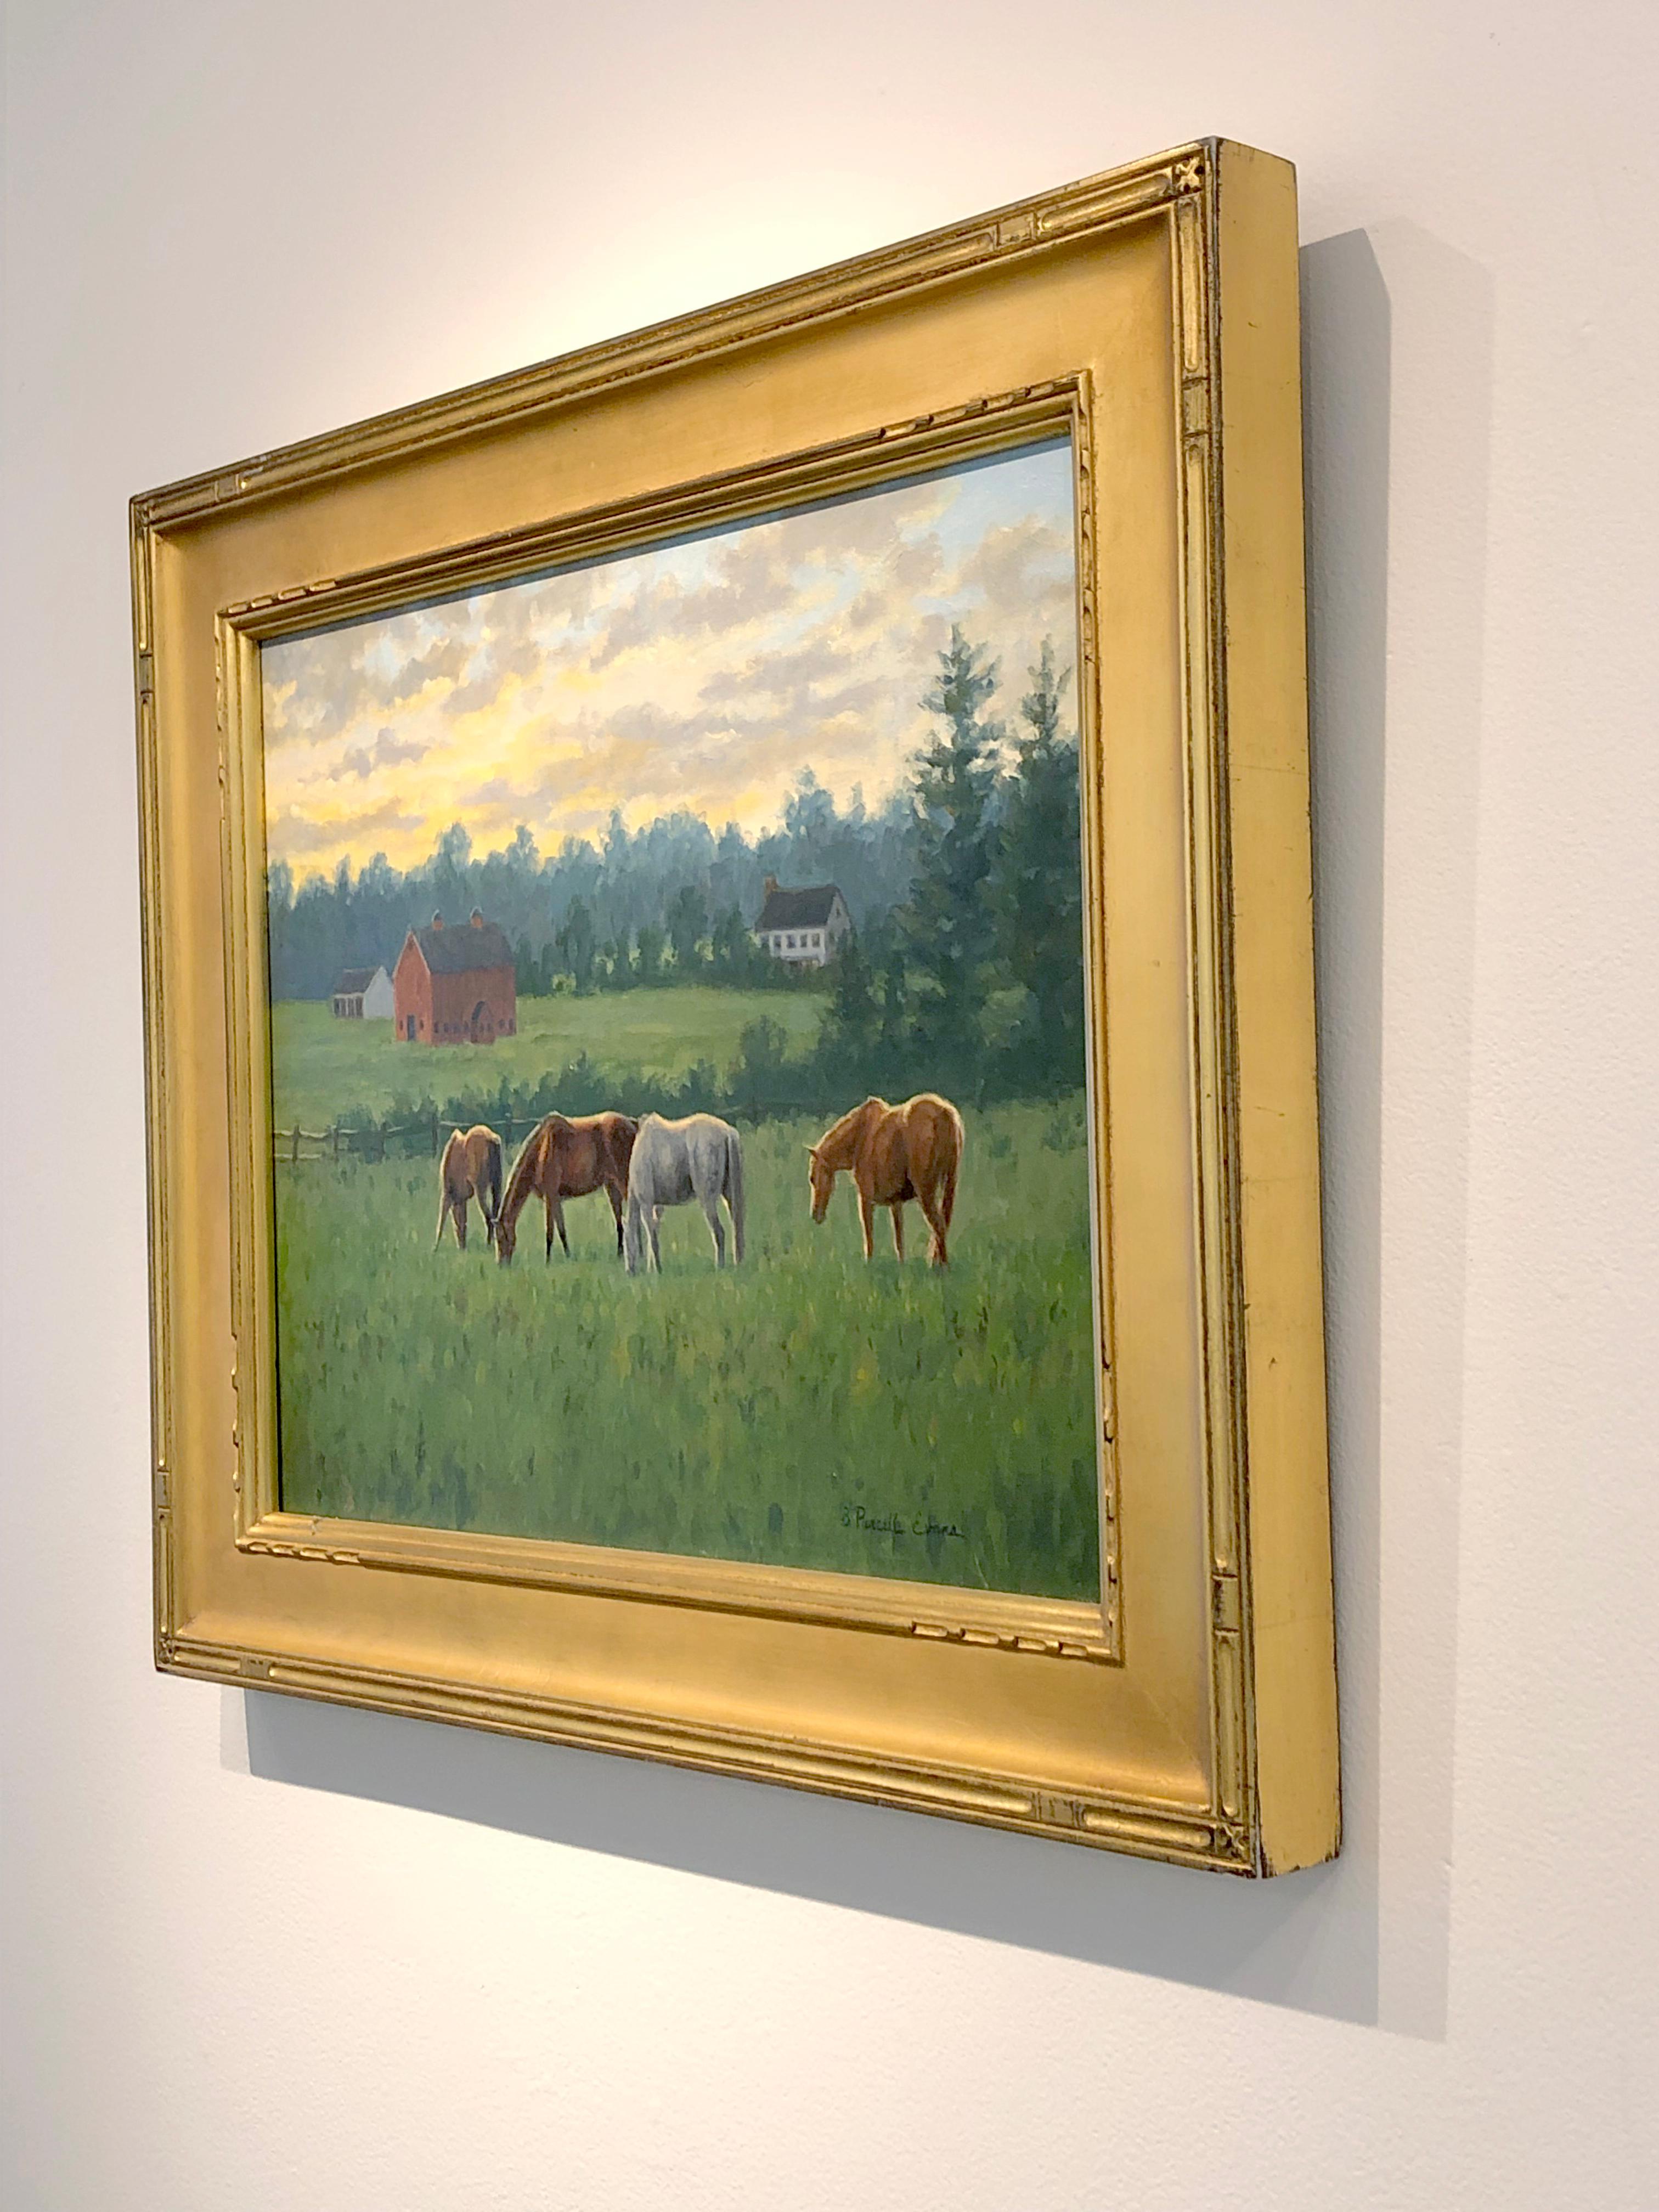 Peinture à l'huile « Peaceful Evening » de Beth Parcell, paysage de ferme à chevaux d'équitation, 16 x 20 cm - Réalisme Painting par Beth Parcell 